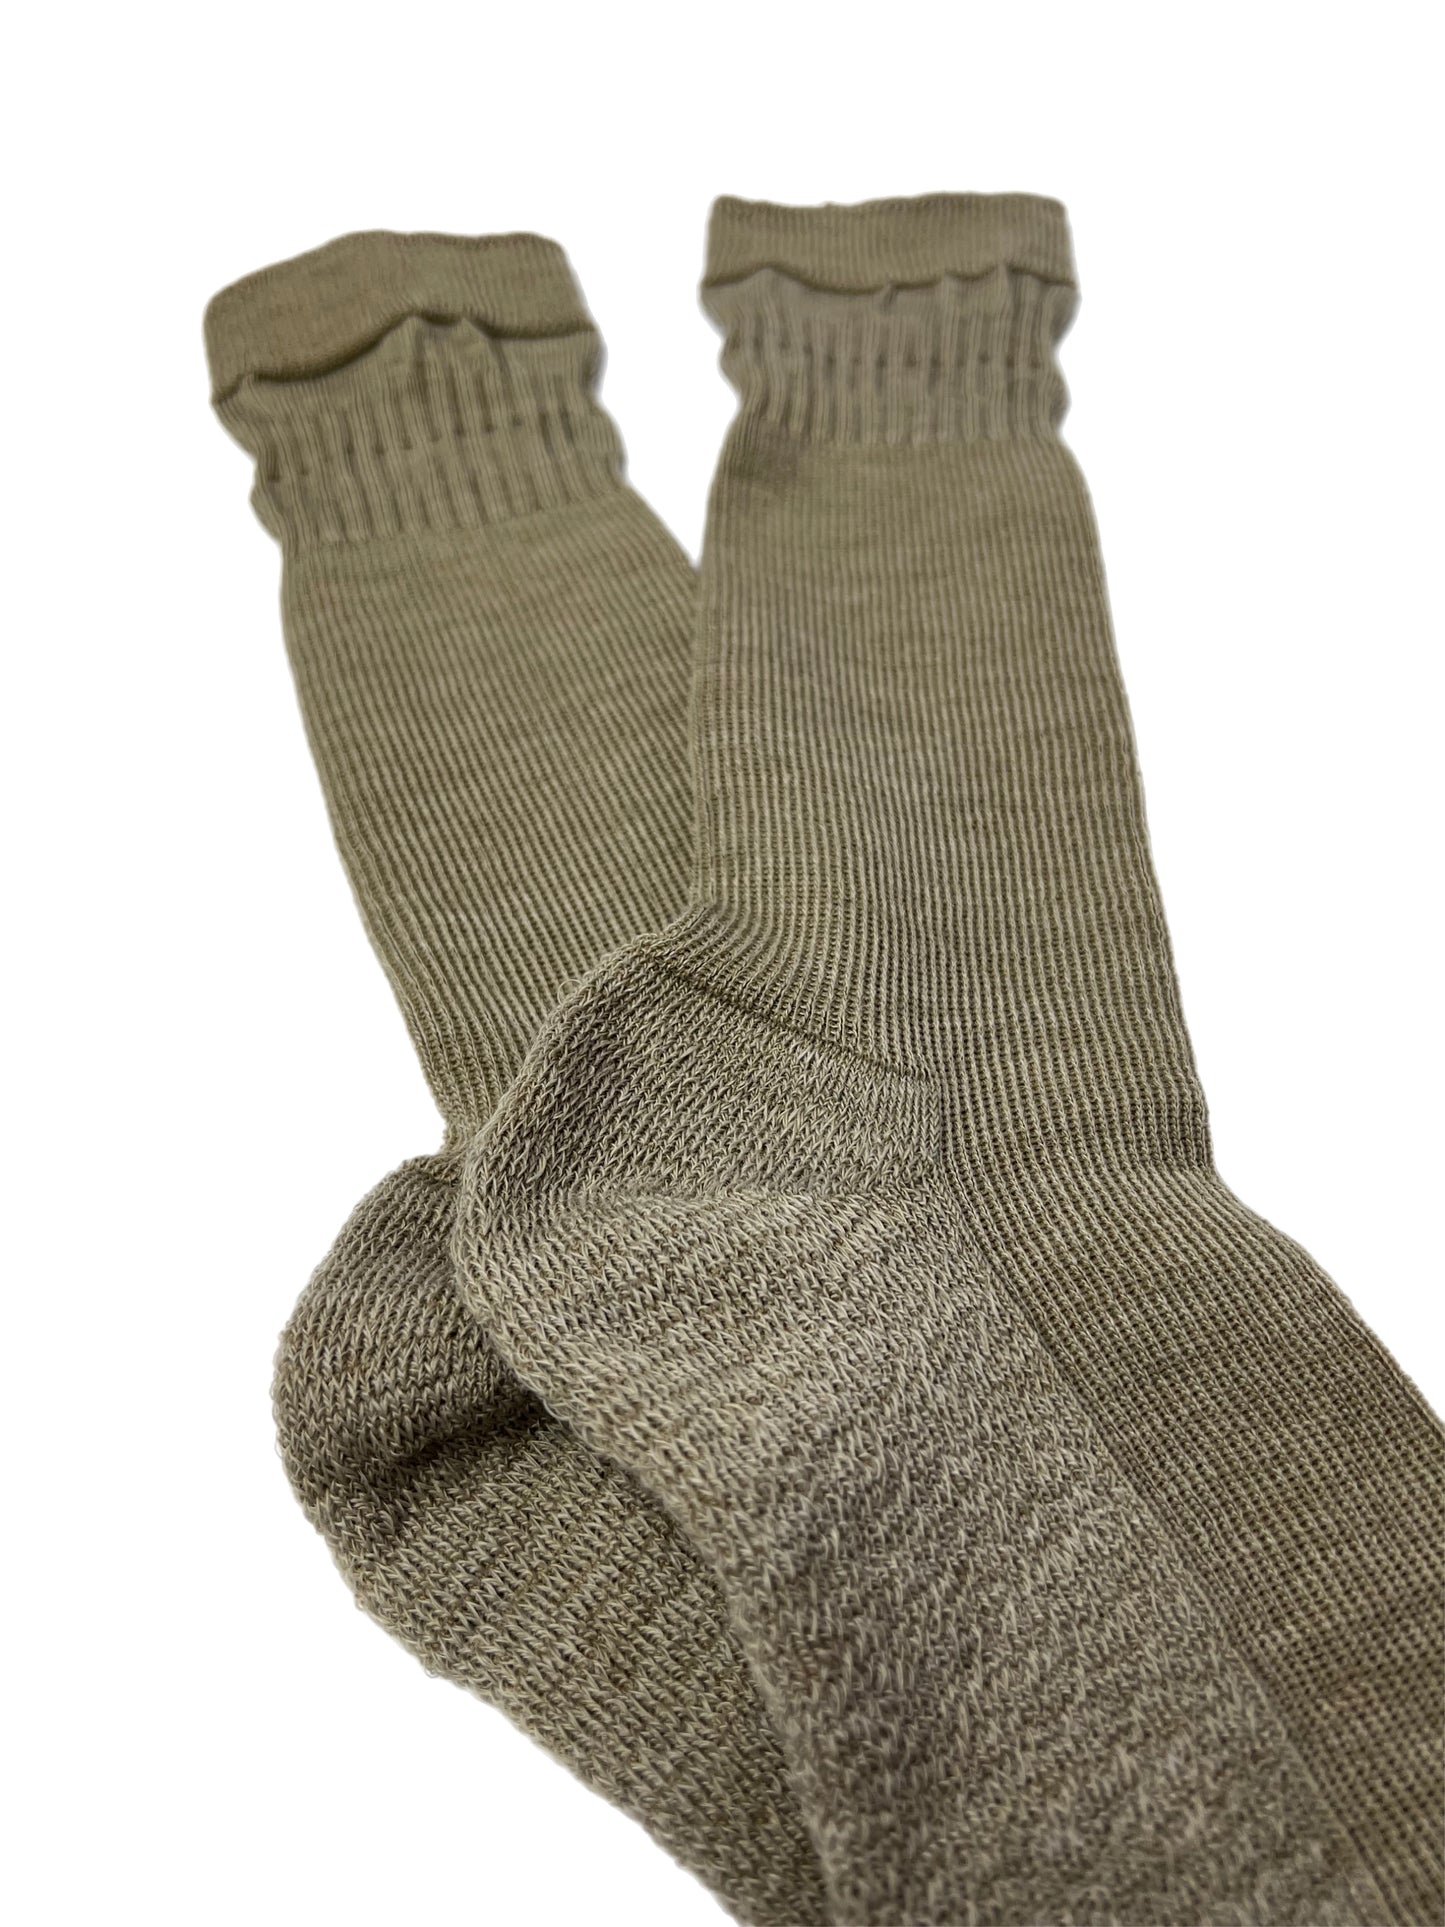 Men's Beige Relaxed Top Sock